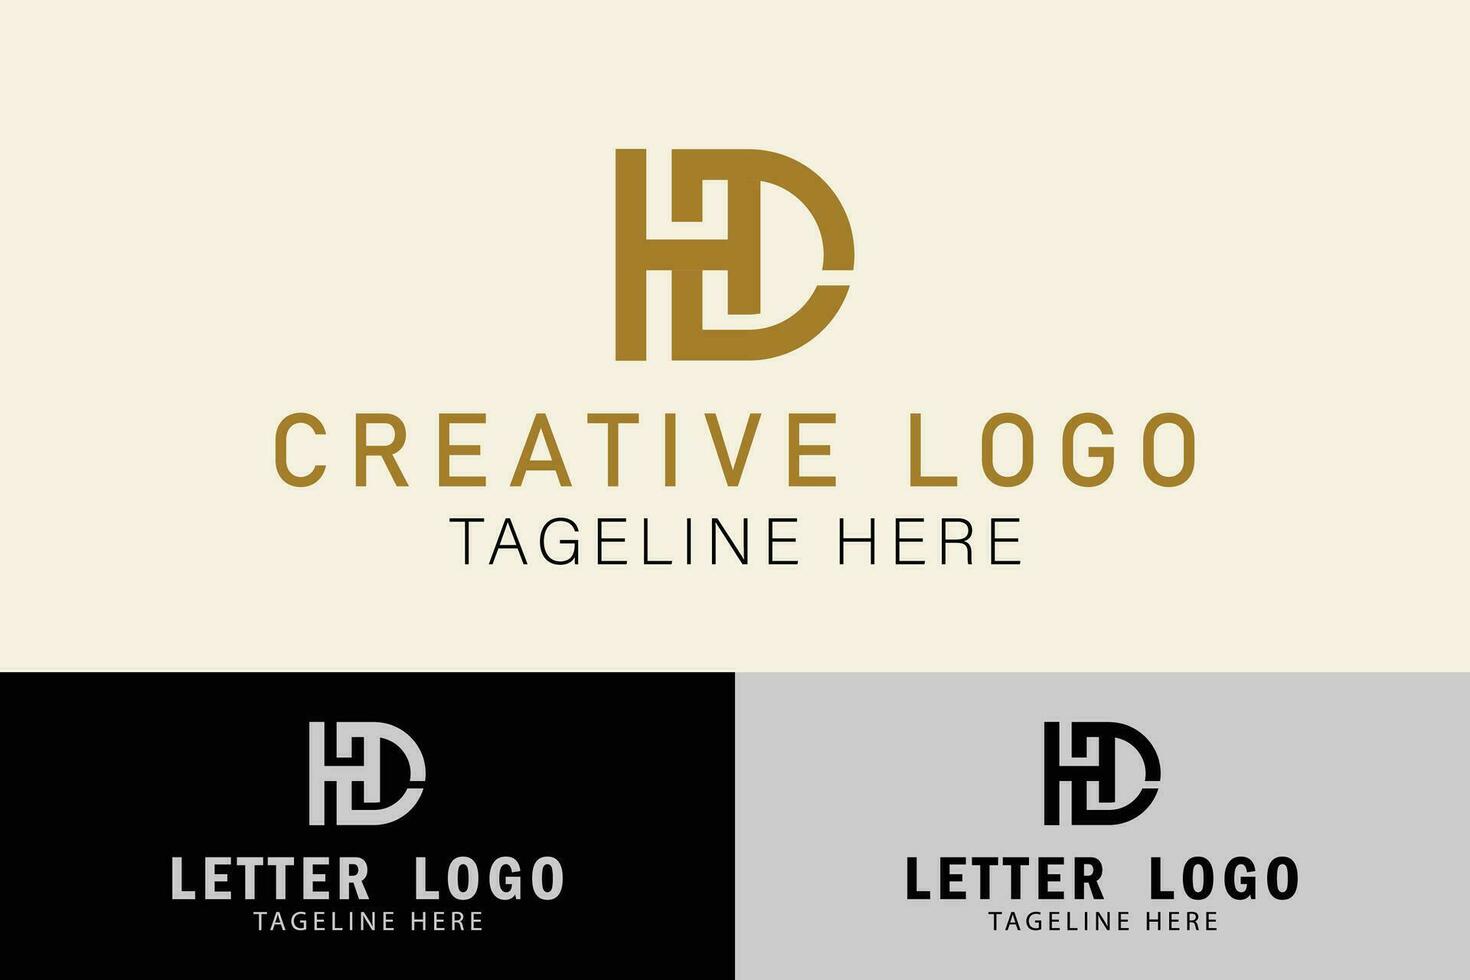 abstrakt brev hd eller dh logotyp. kreativ logotyp professionell. enkel design redigerbar vektor